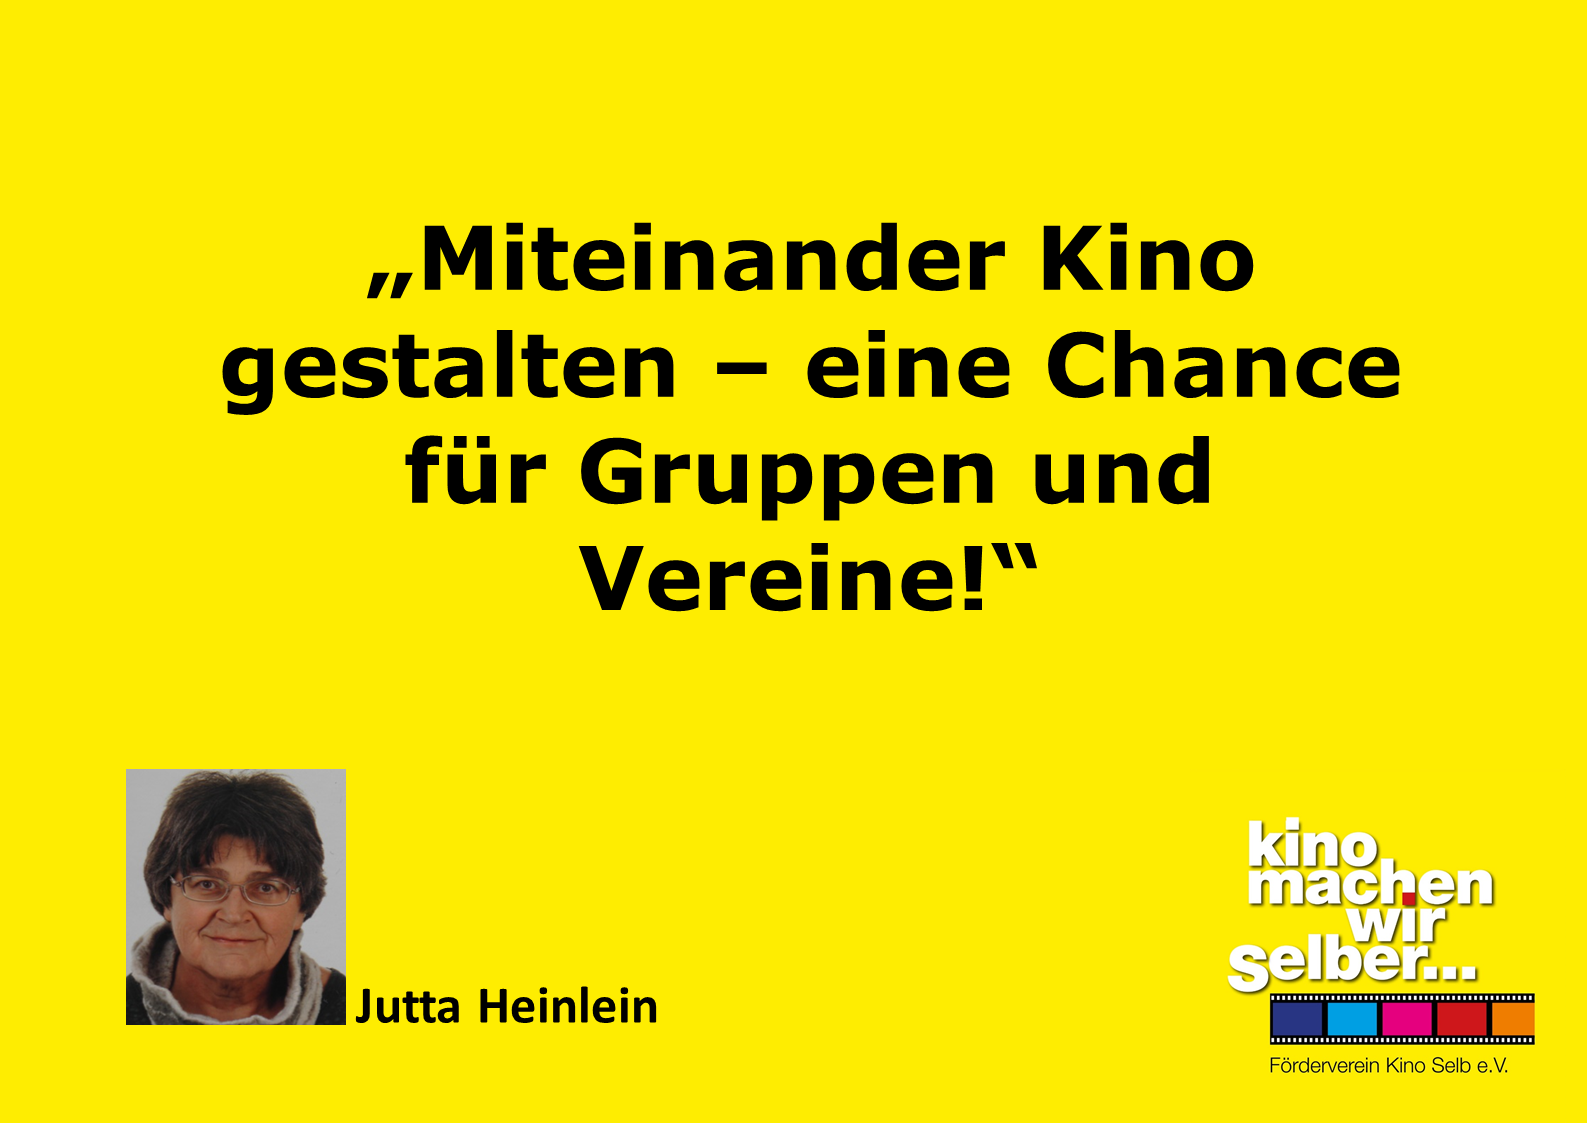 Jutta Heinlein vom Förderverein Kino e. V. sagt: Miteinander Kino gestalten - eine Chance für Gruppen und Vereine!